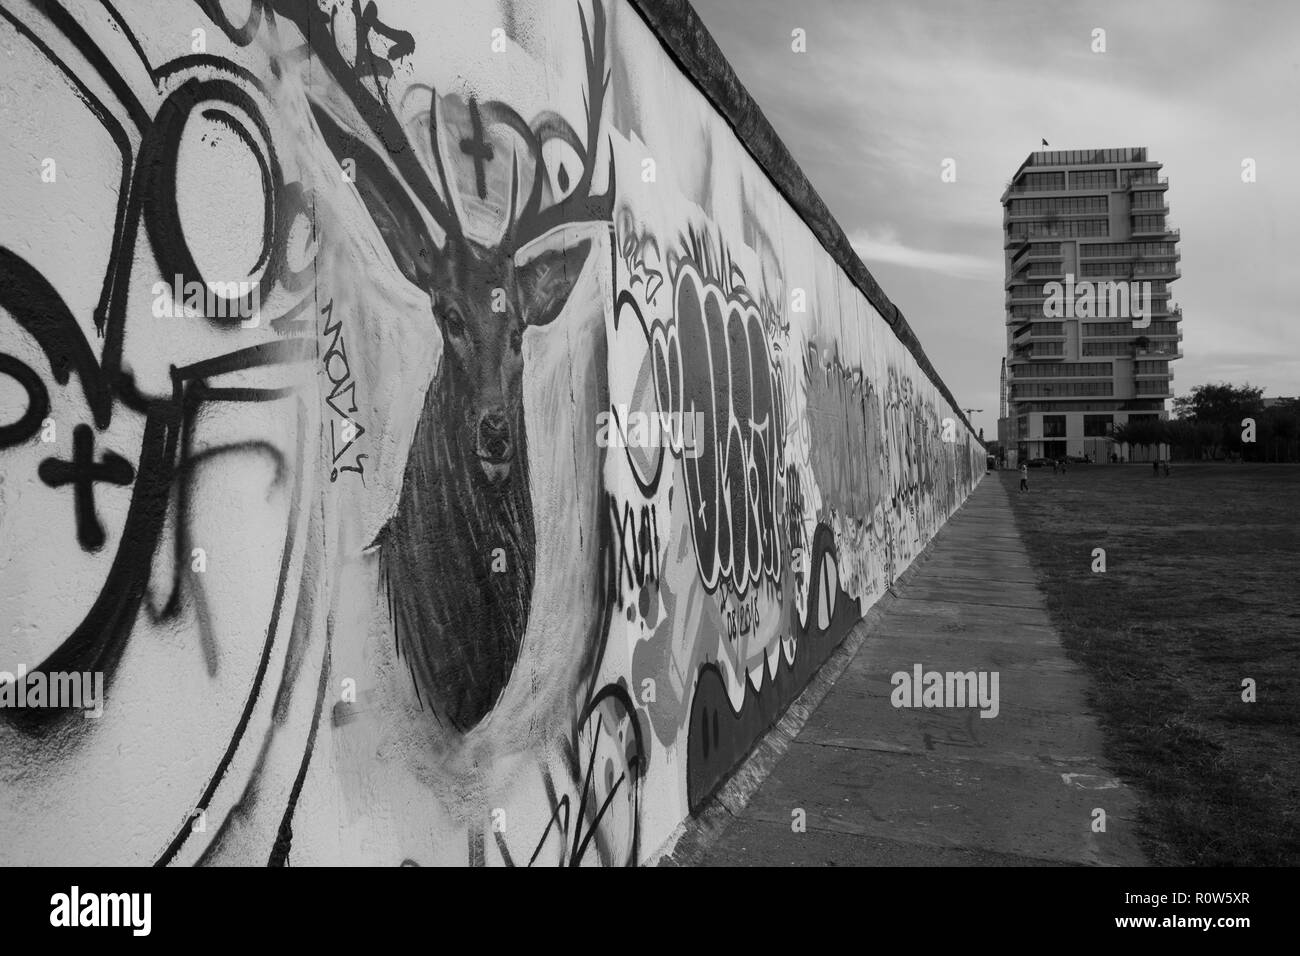 Berlin Wall, Berlin, Germany Stock Photo